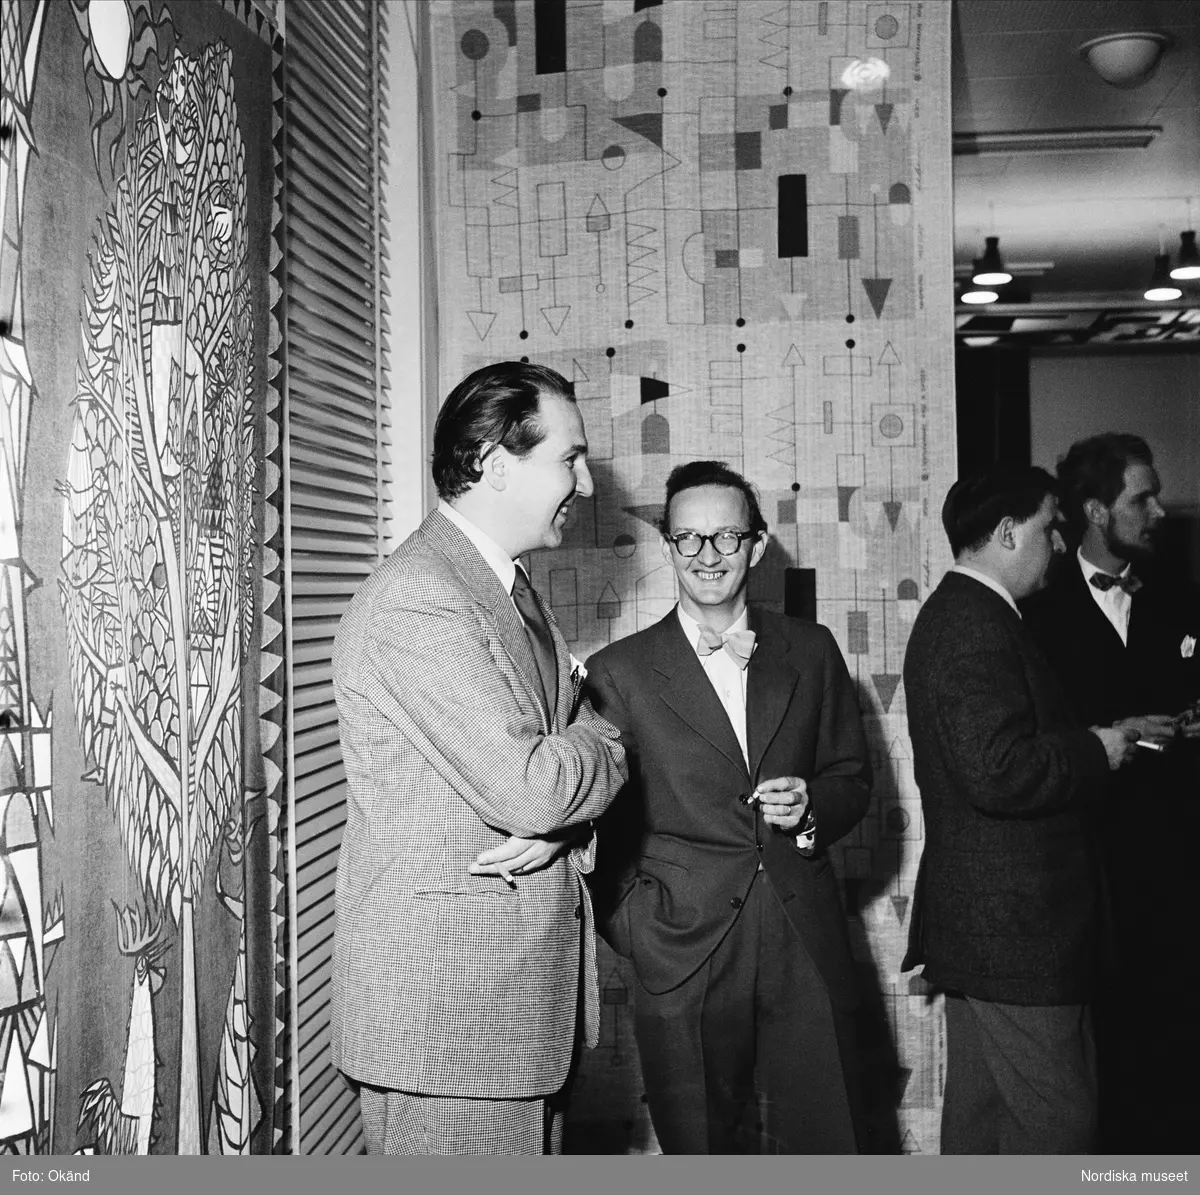 NK, utställningen Signerad textil har vernissage 29 oktober 1954. Från vänster Karl Axel Pehrson, Stig Lindberg, Olle Baertling och Olle Bonniér. I bakgrunden tyger som de har formgivit.